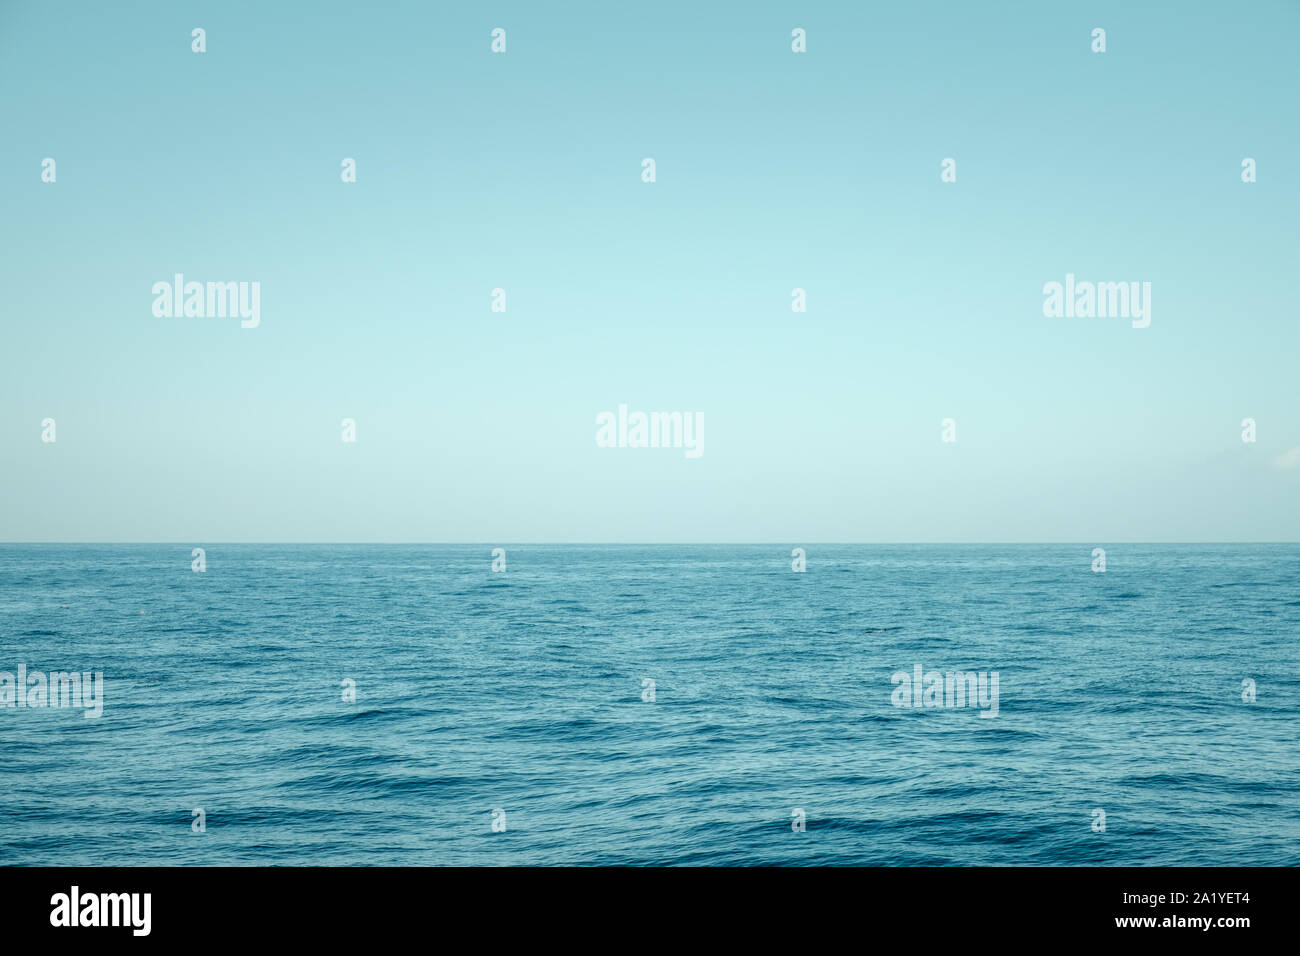 Marine, ocean Horizon und blauer Himmel - Stockfoto